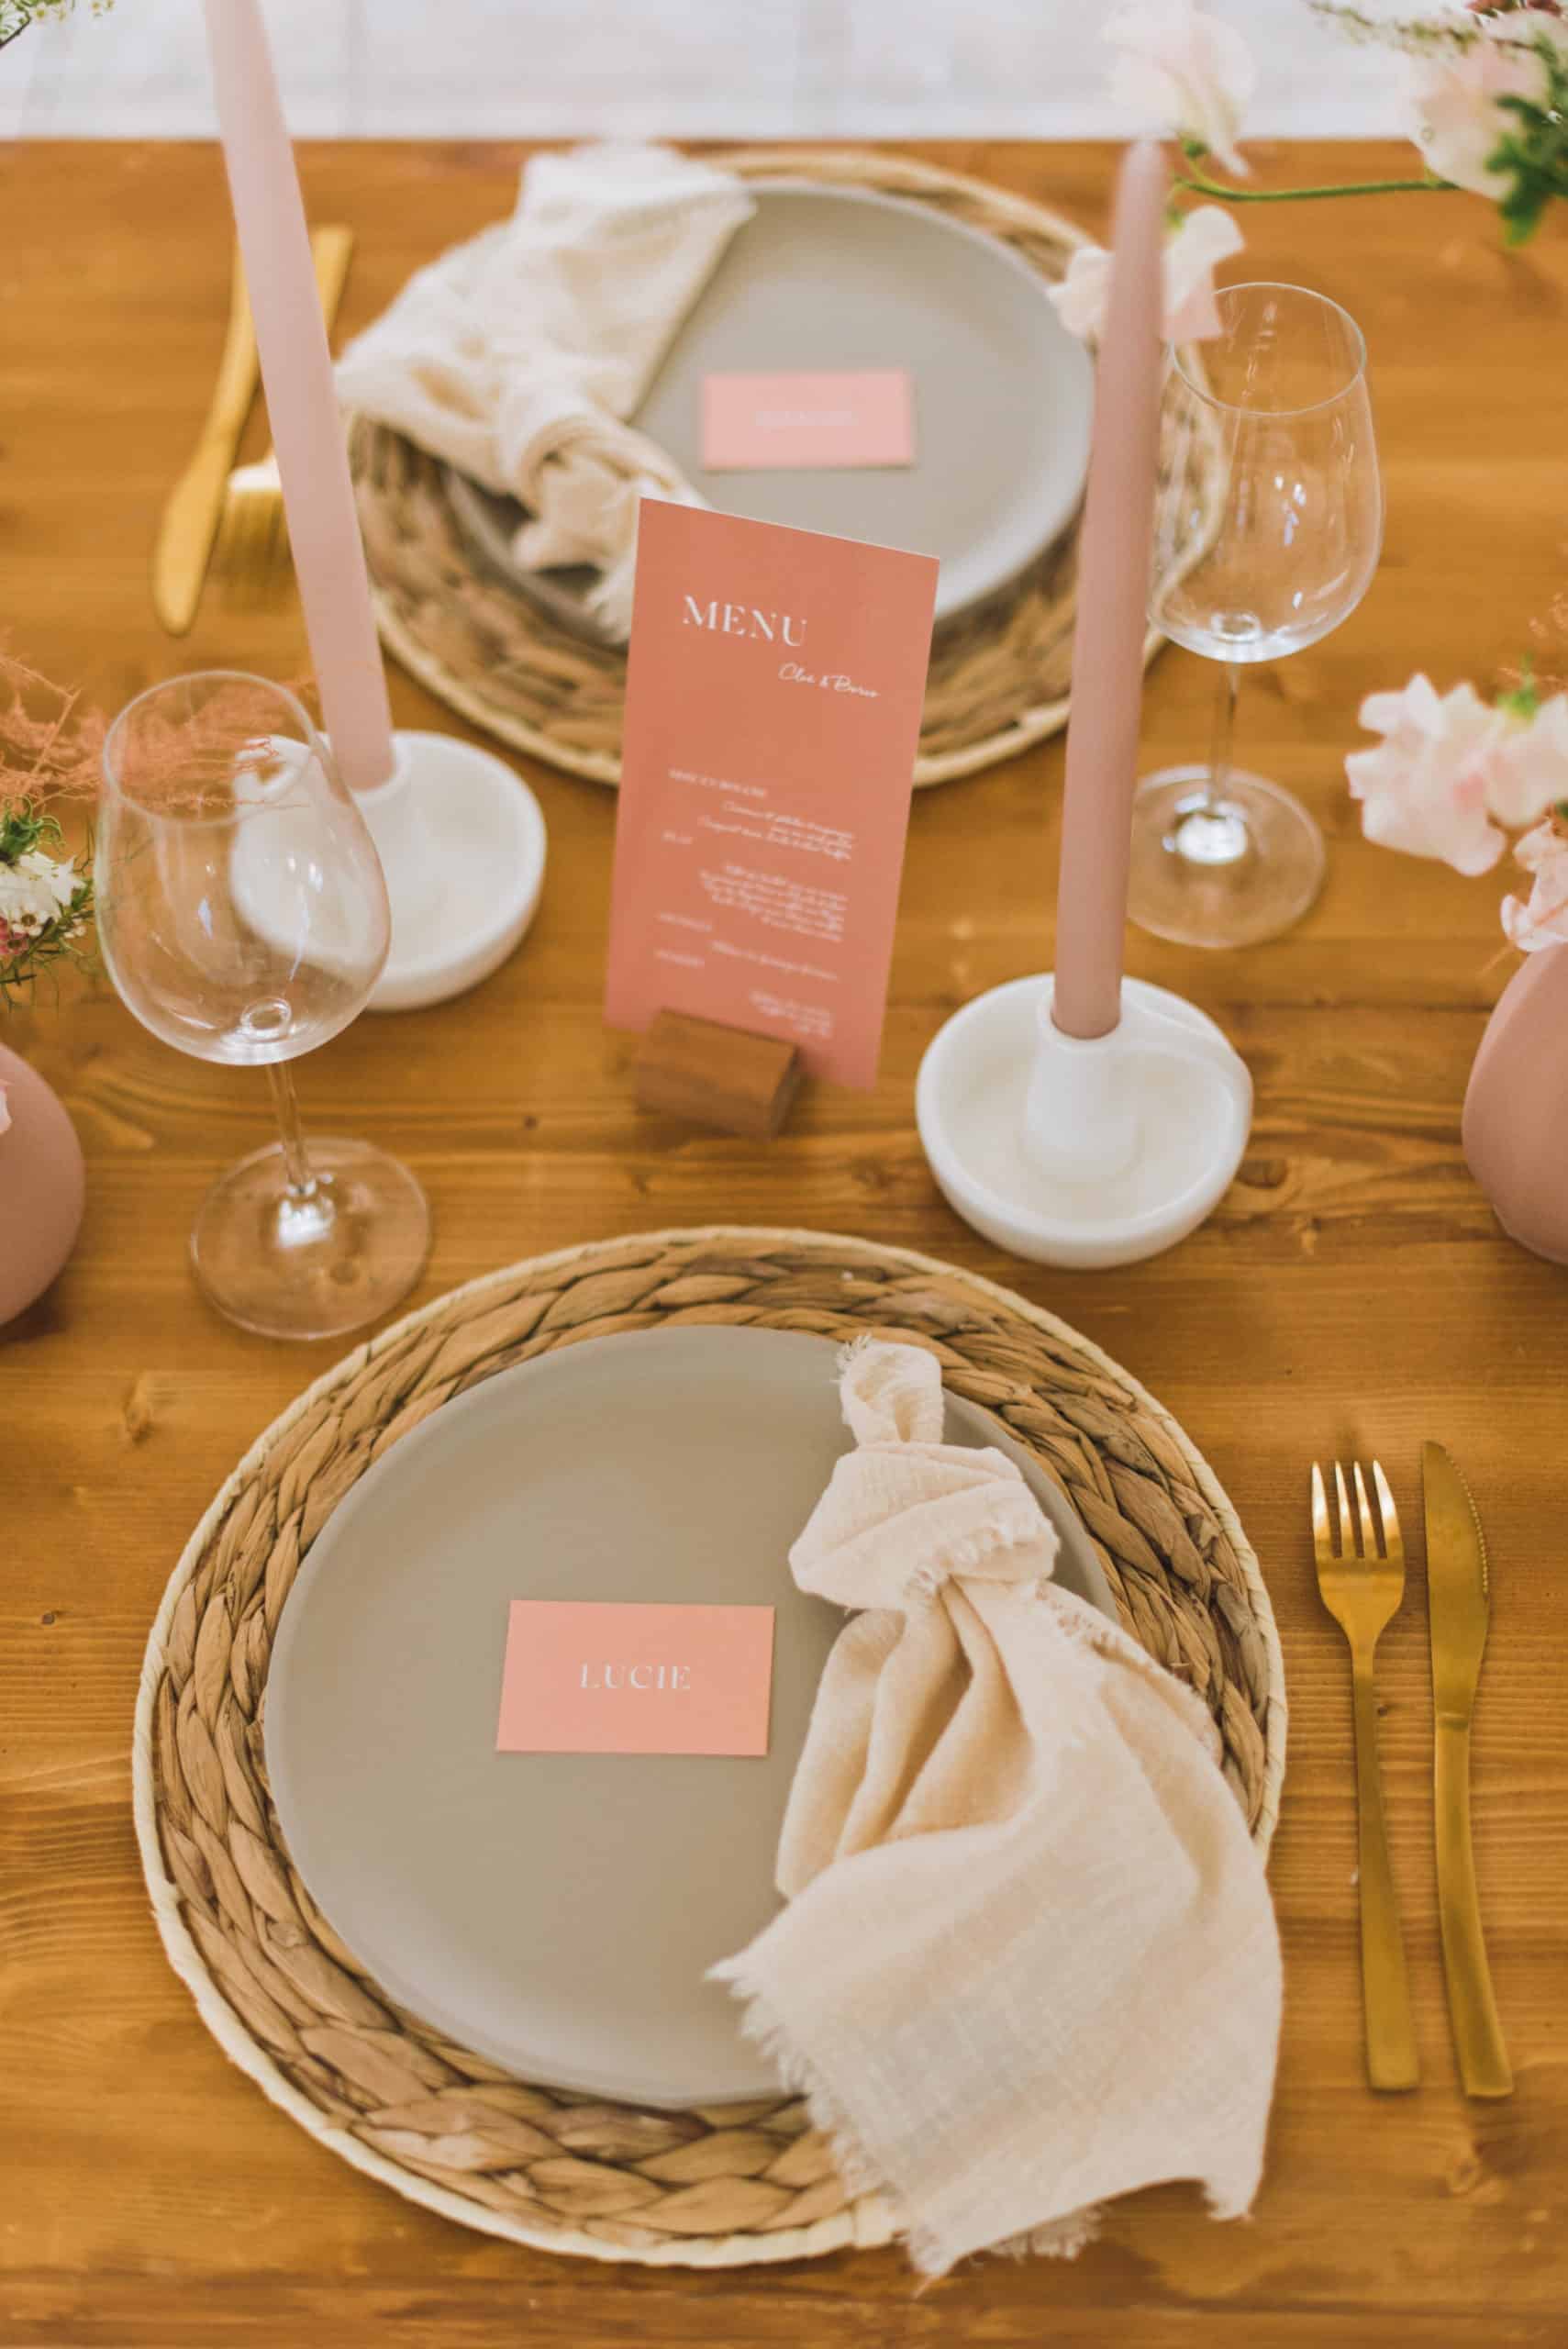 decoration table de mariage boheme couleur creme, beige et terracotta